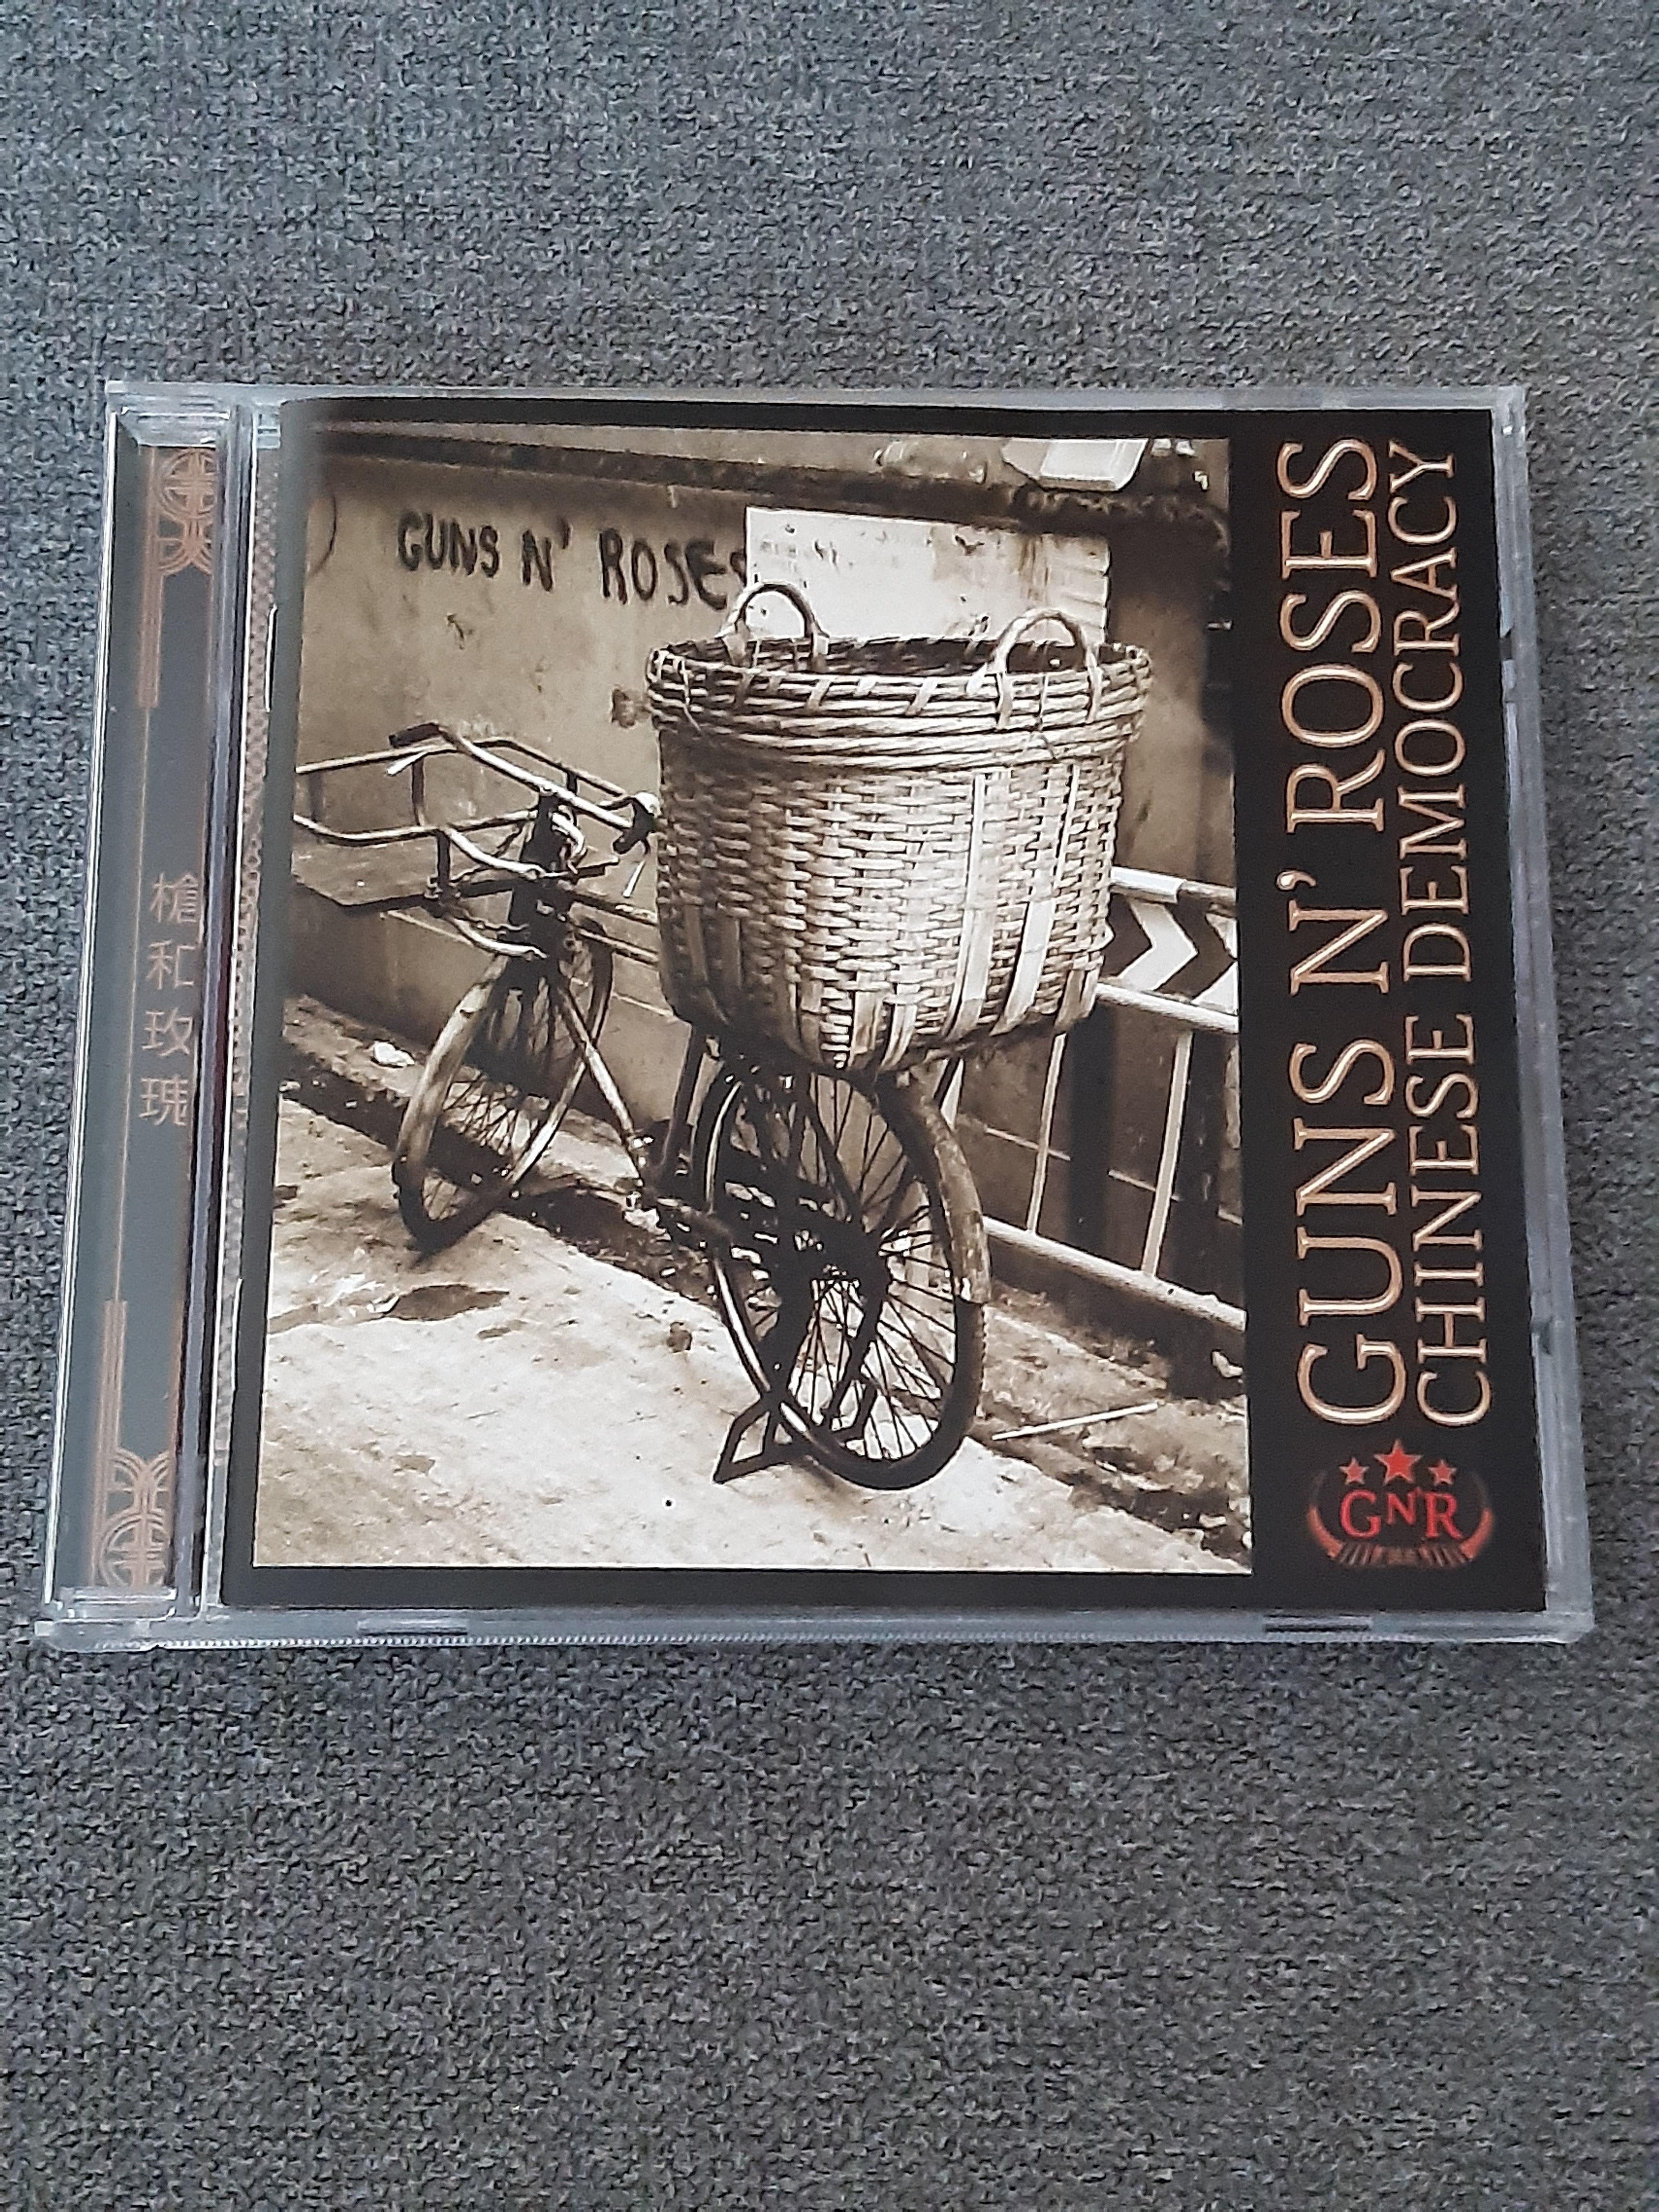 Guns N' Roses - Chinese Democracy - CD (käytetty)